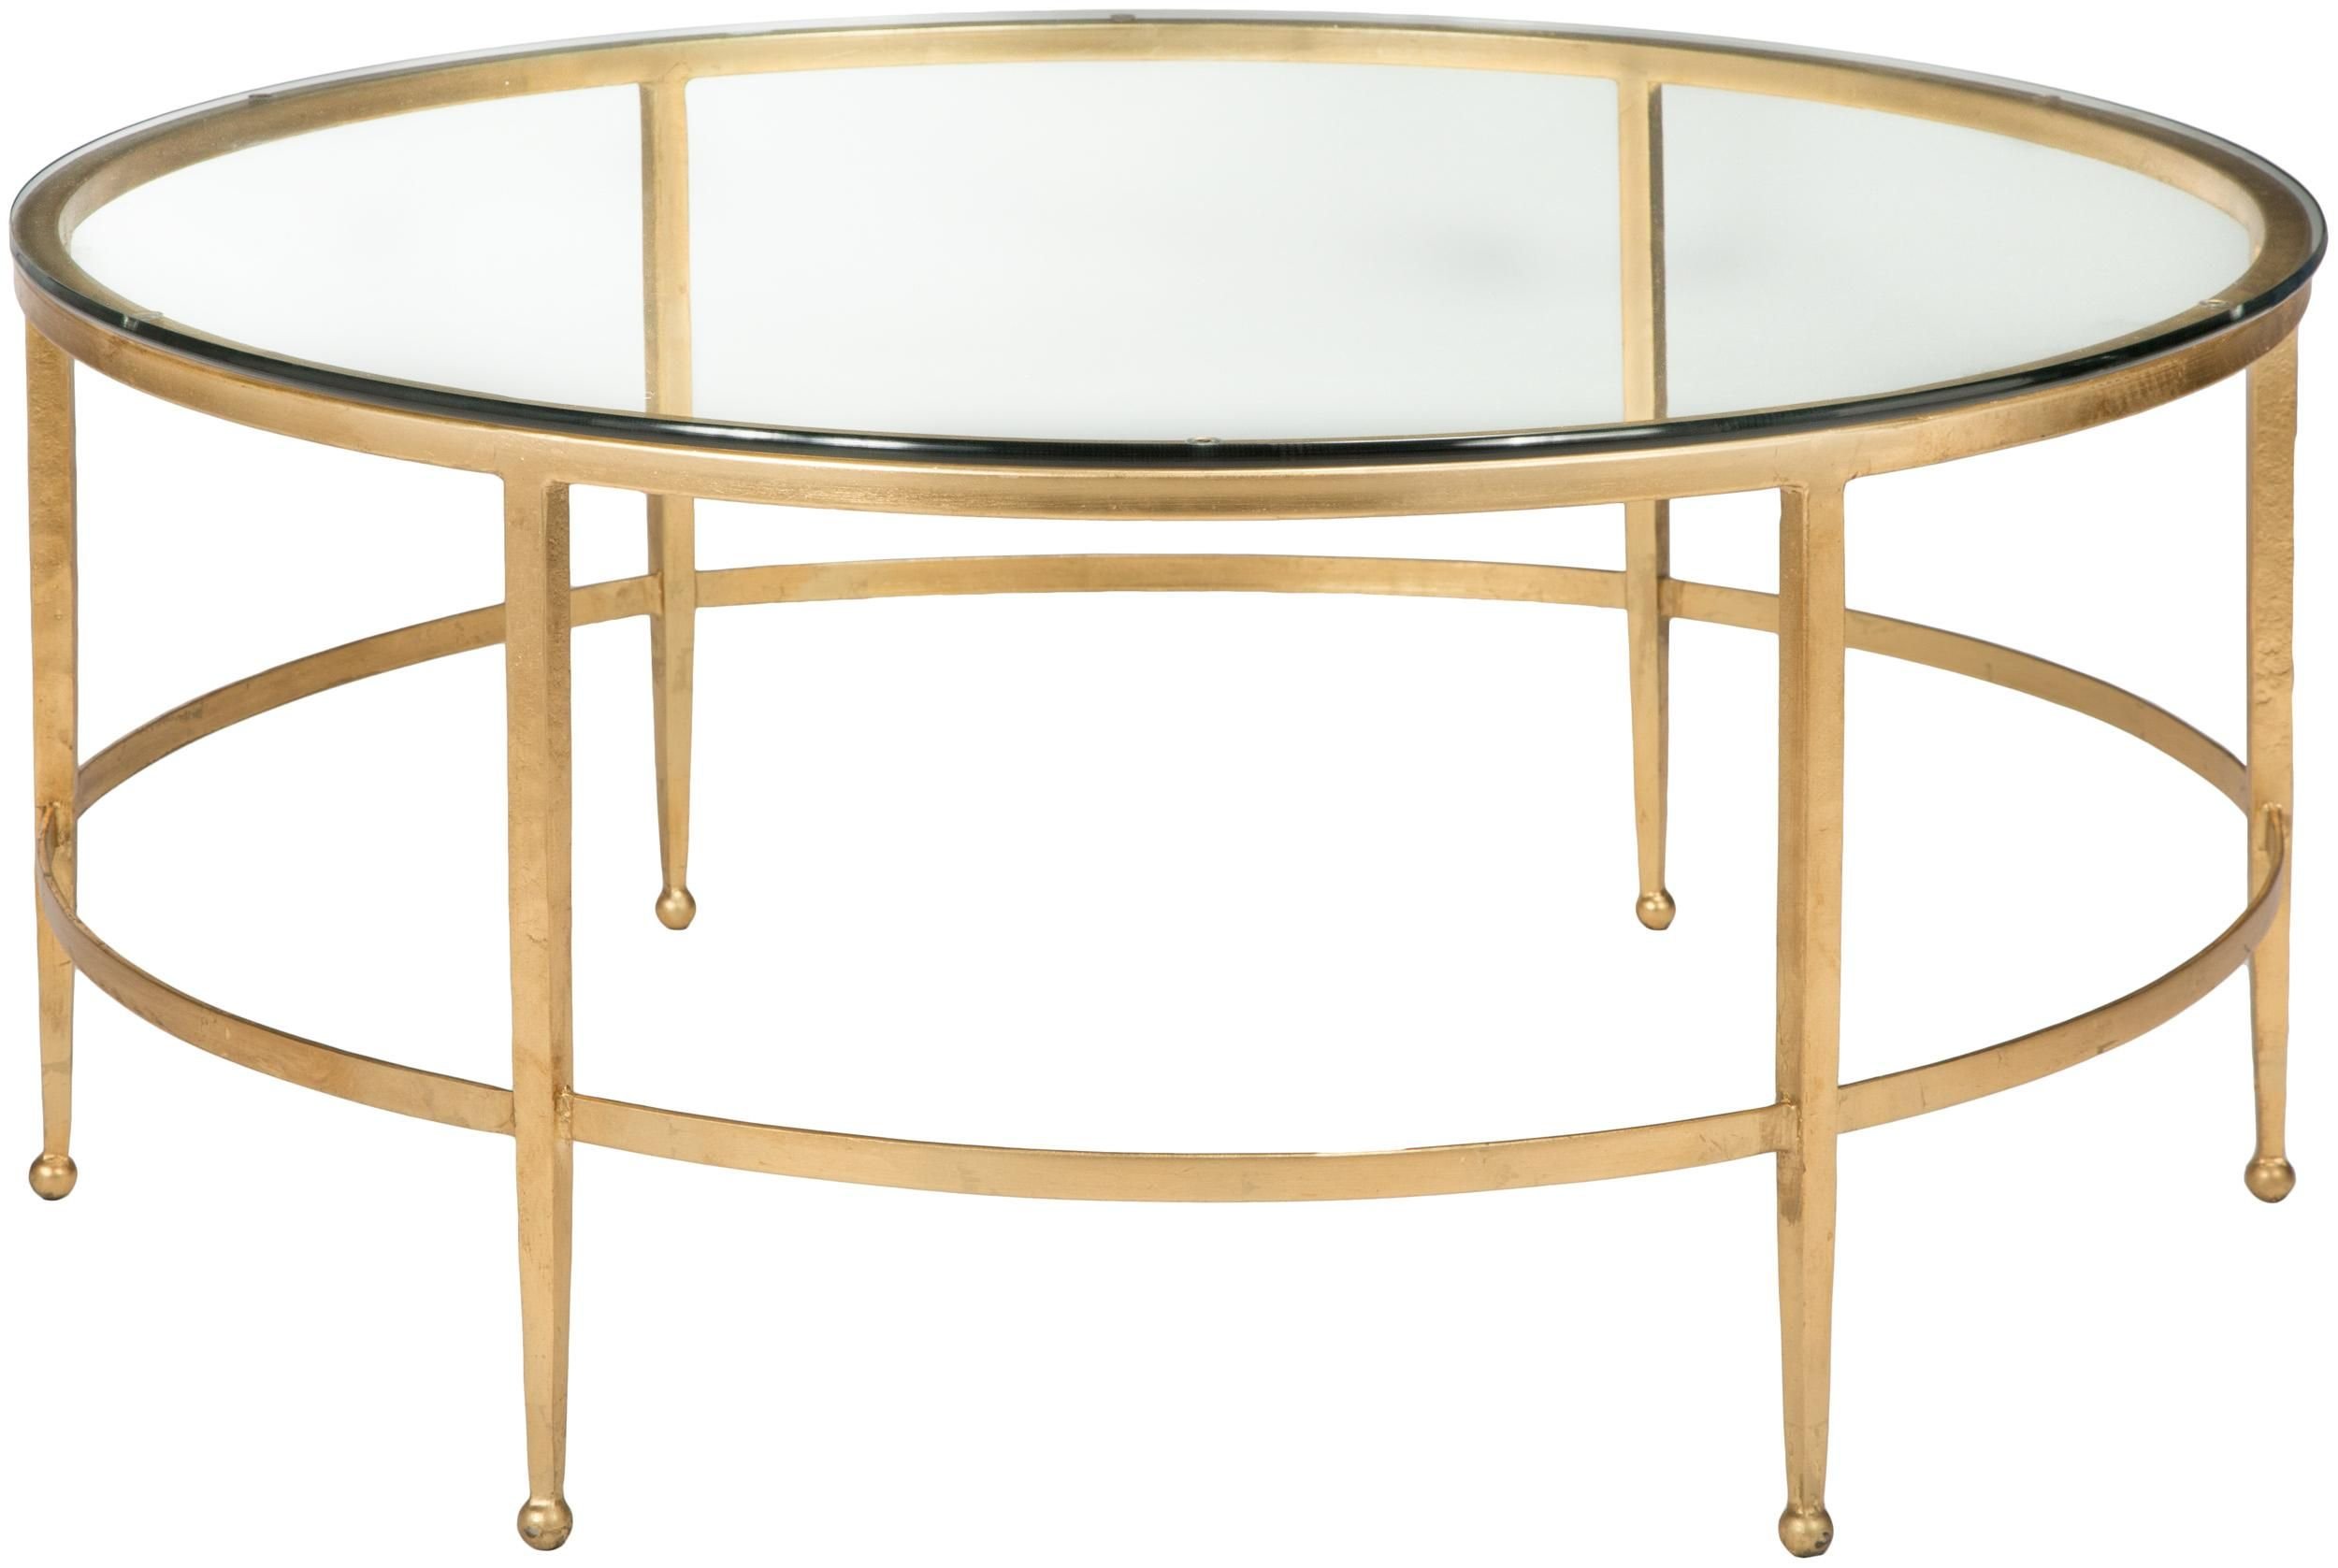 Золотистый стол. Кофейный столик Gilbert Side Table Gold. Стол dikline h140. T5911-0 журнальный столик Landrace- Antique Gold finish. Журнальный столик полукруглый.